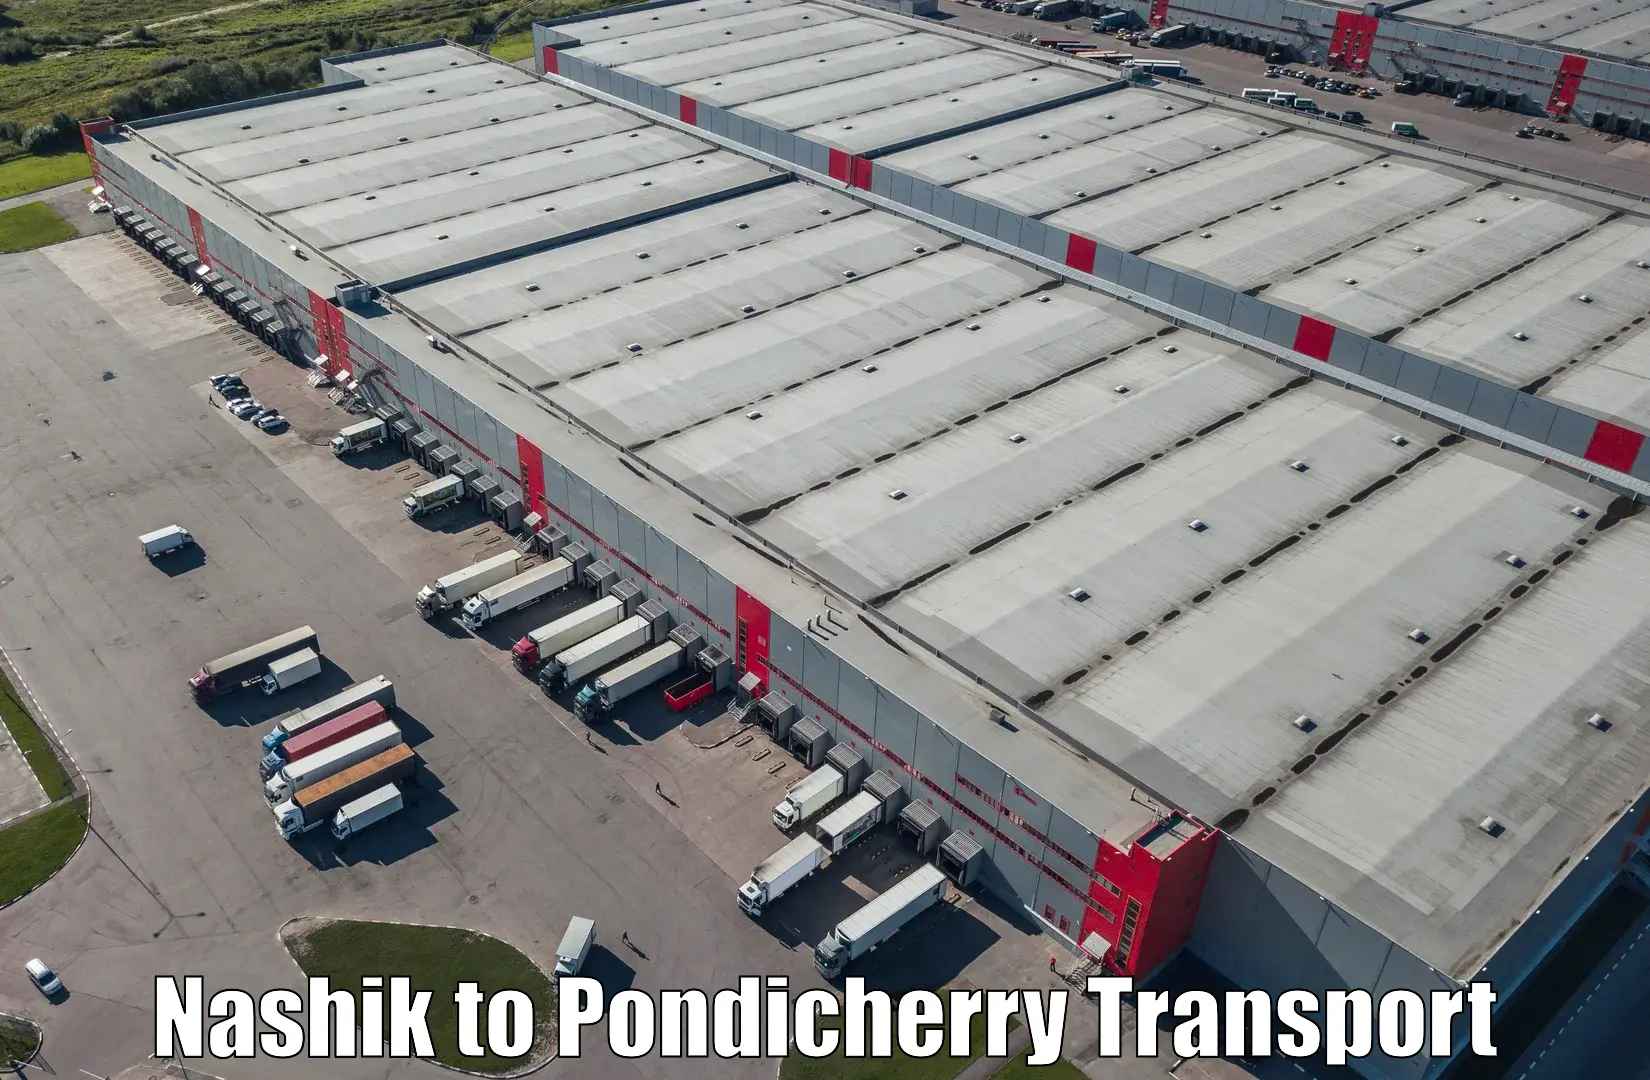 International cargo transportation services Nashik to Pondicherry University